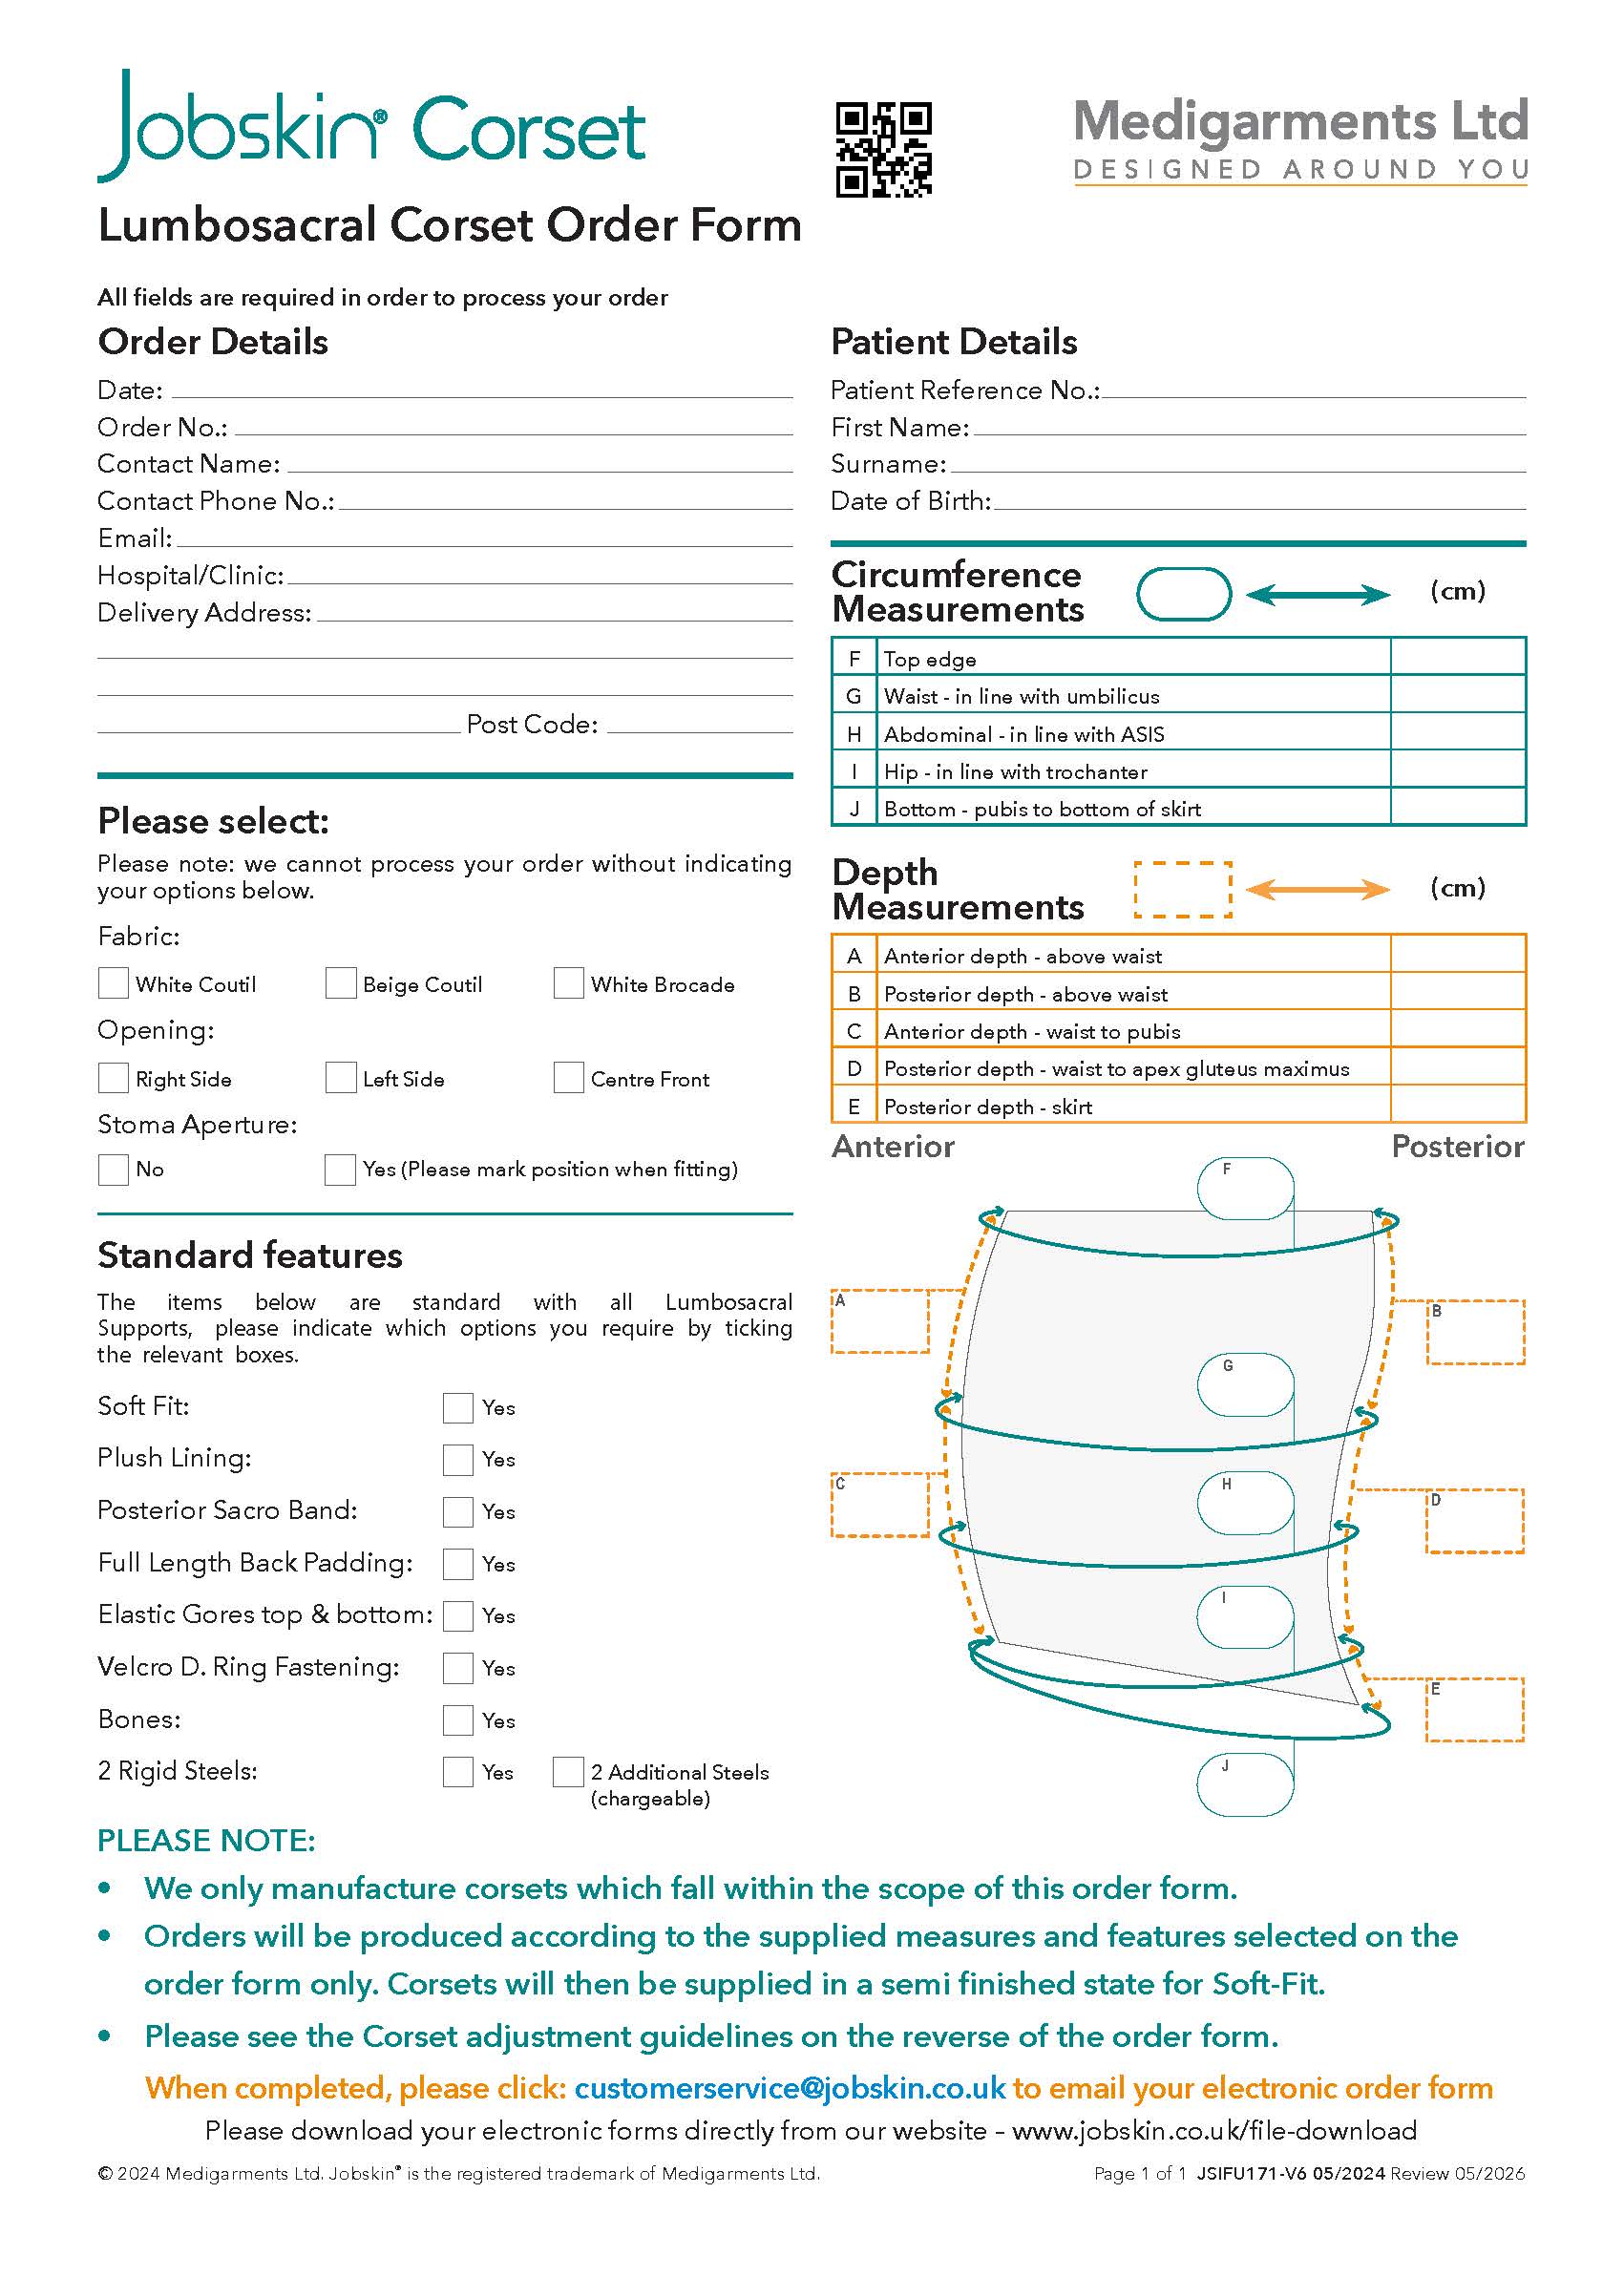 Jobskin Lumbosacral Corset Order Form - Electronic